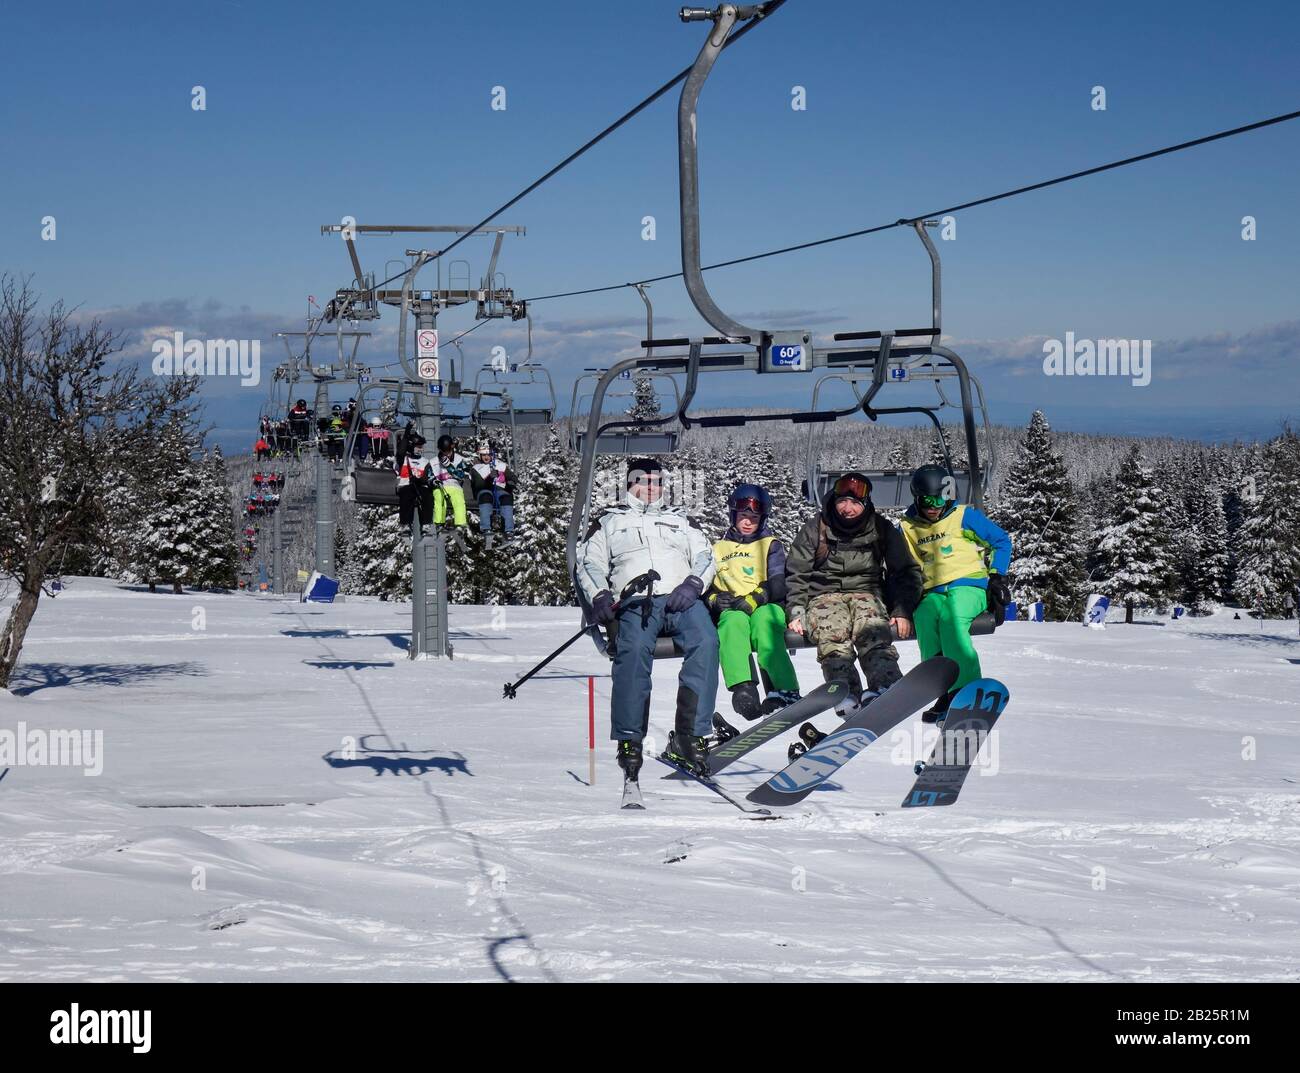 Los esquiadores se encuentran en el telesilla de esquí de la estación de esquí de Rogla, Eslovenia Foto de stock